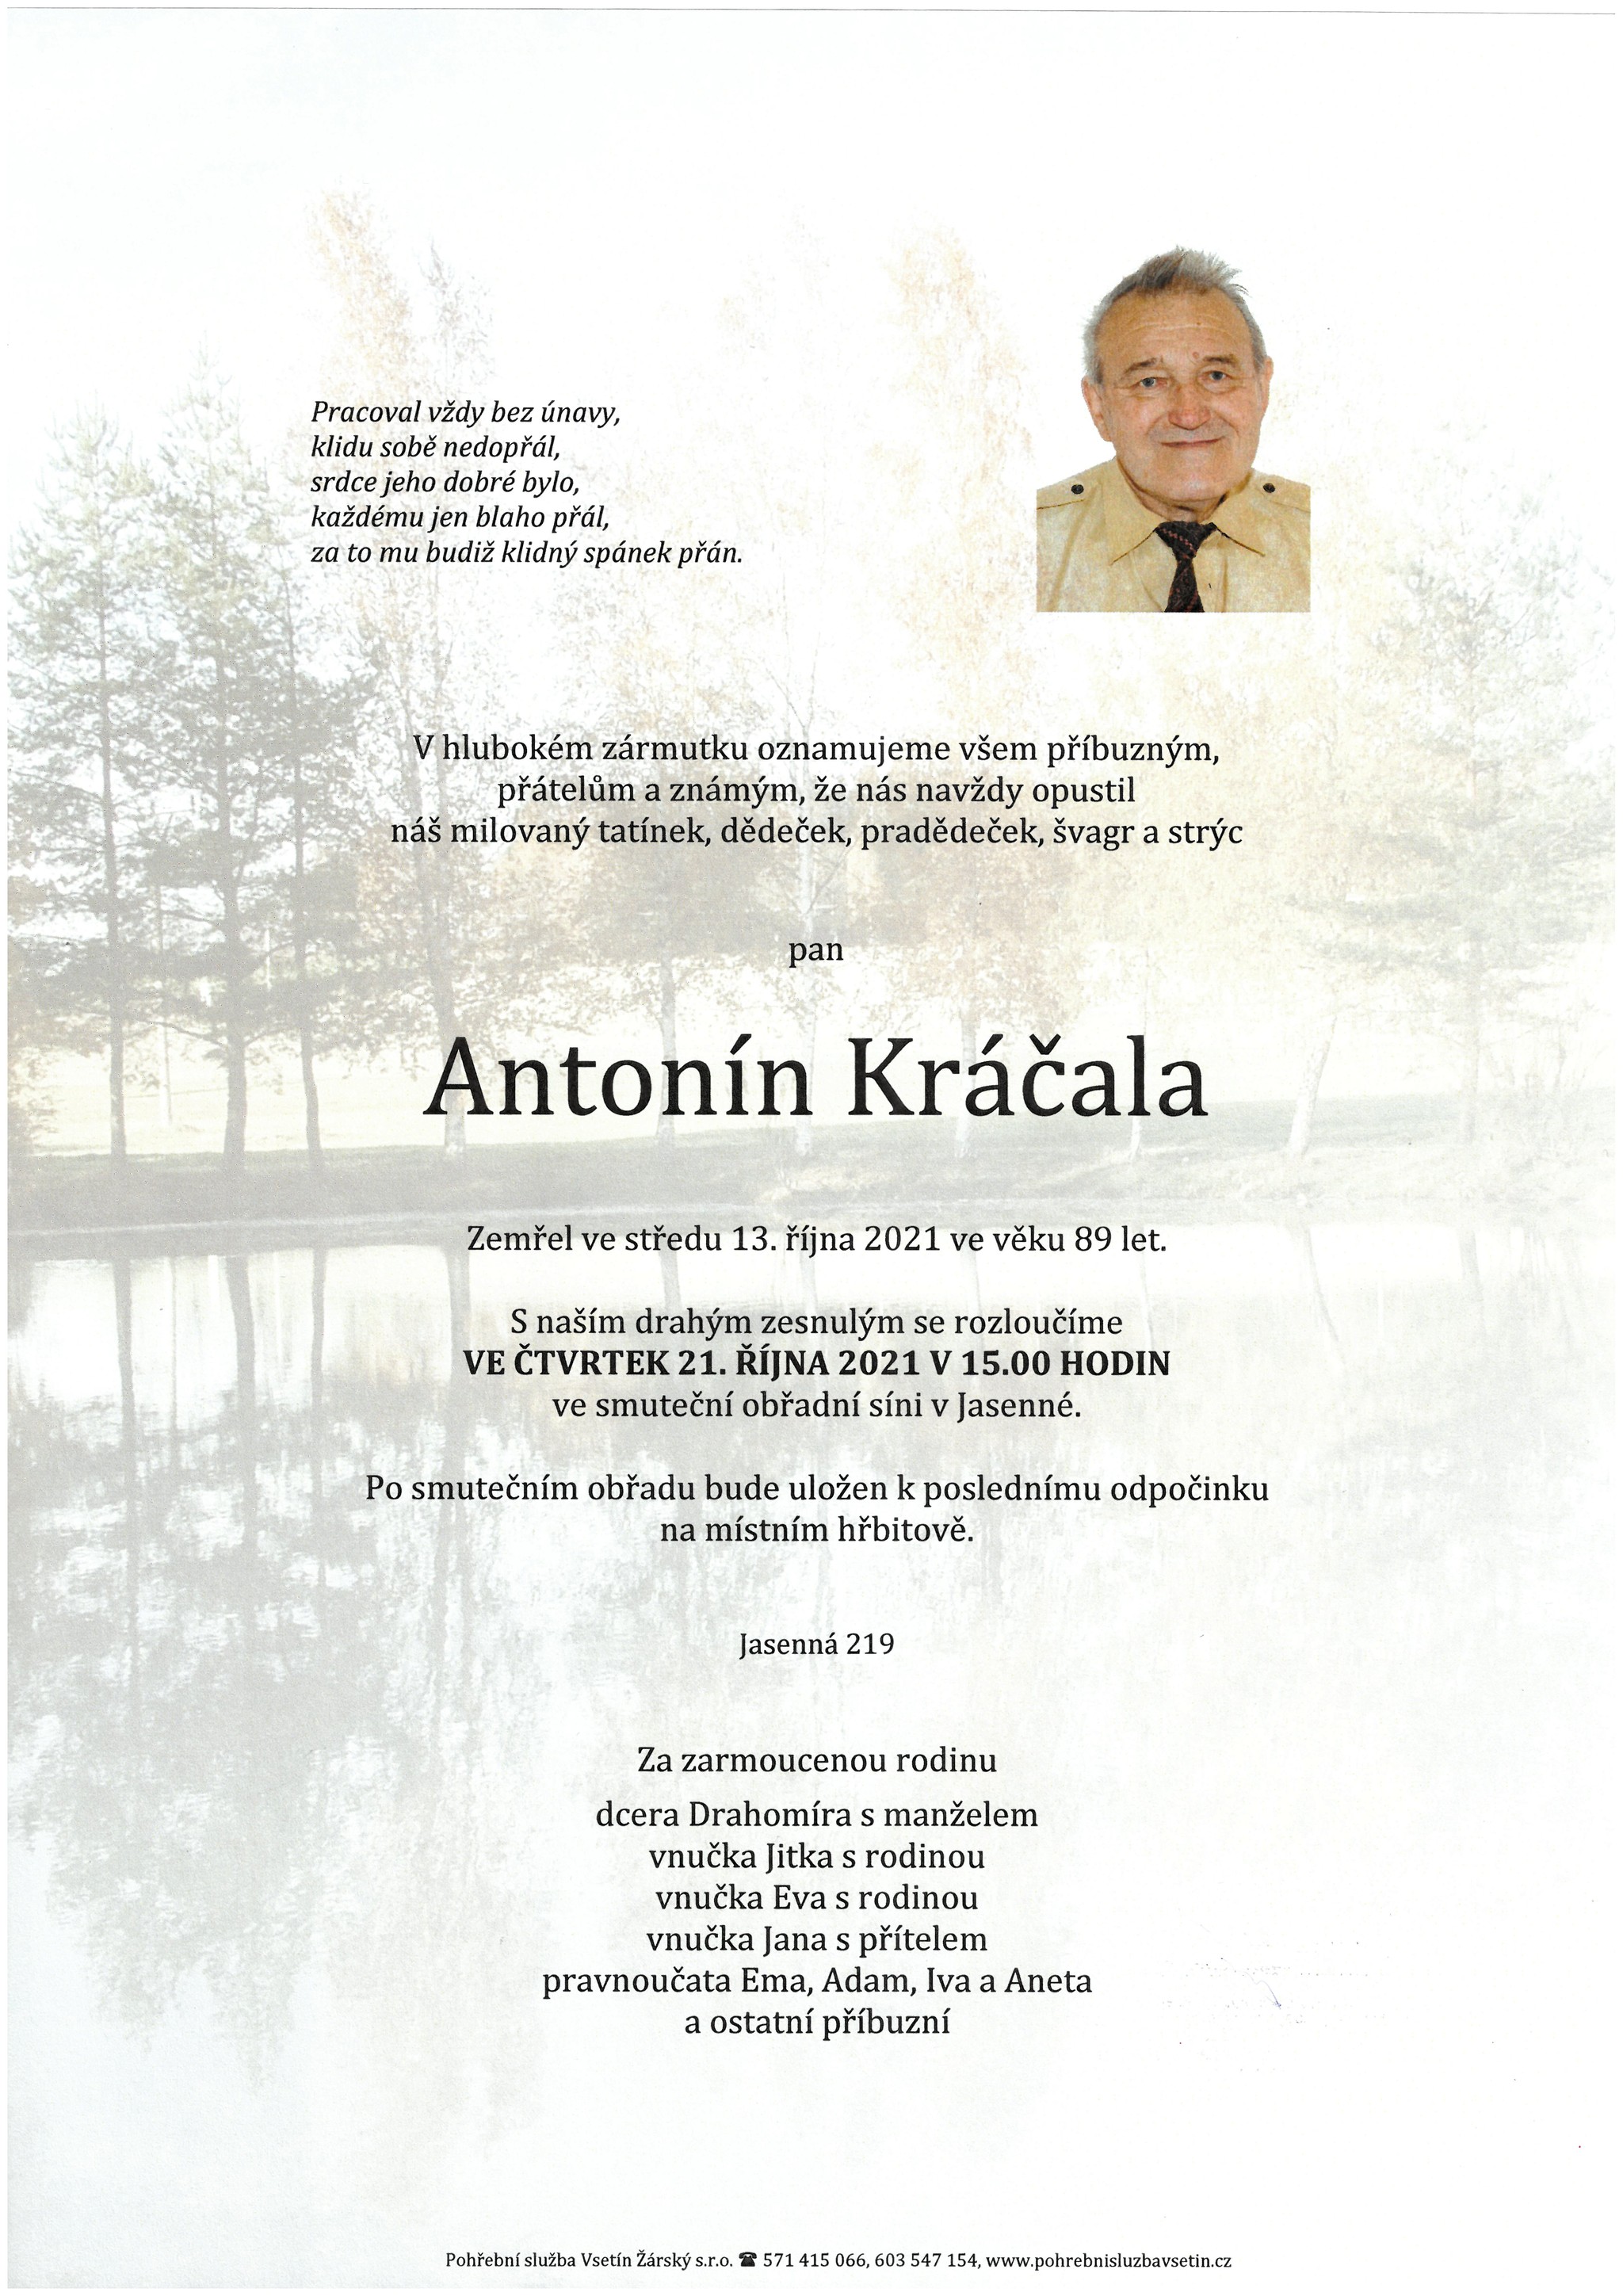 Antonín Kráčala